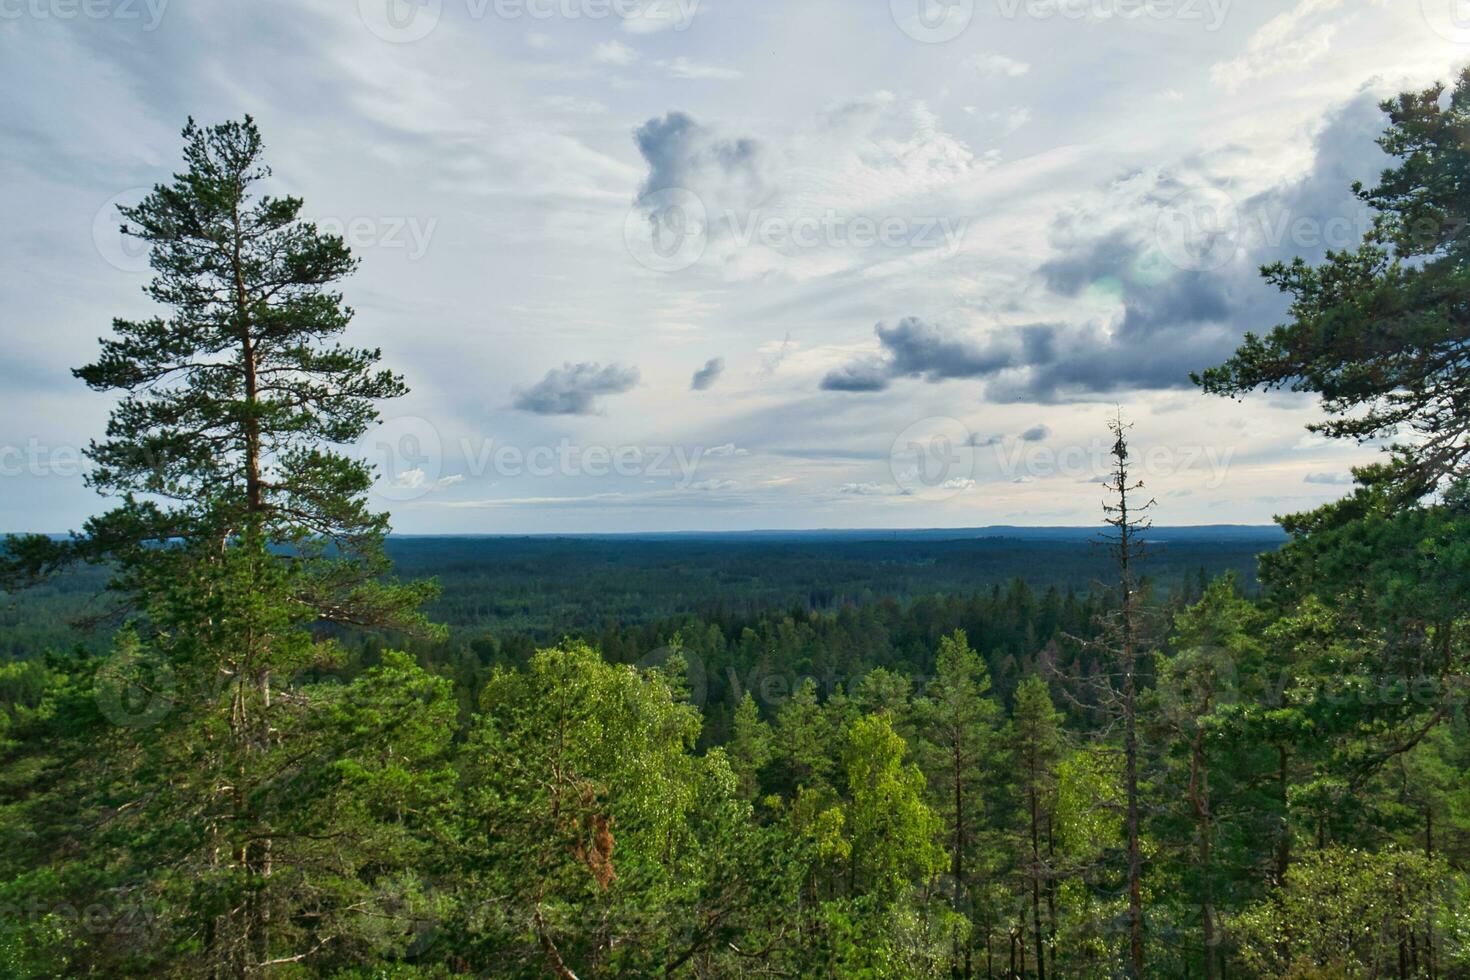 skurugata i smaland, Sverige. synpunkt med se över skogar i skandinavien. foto